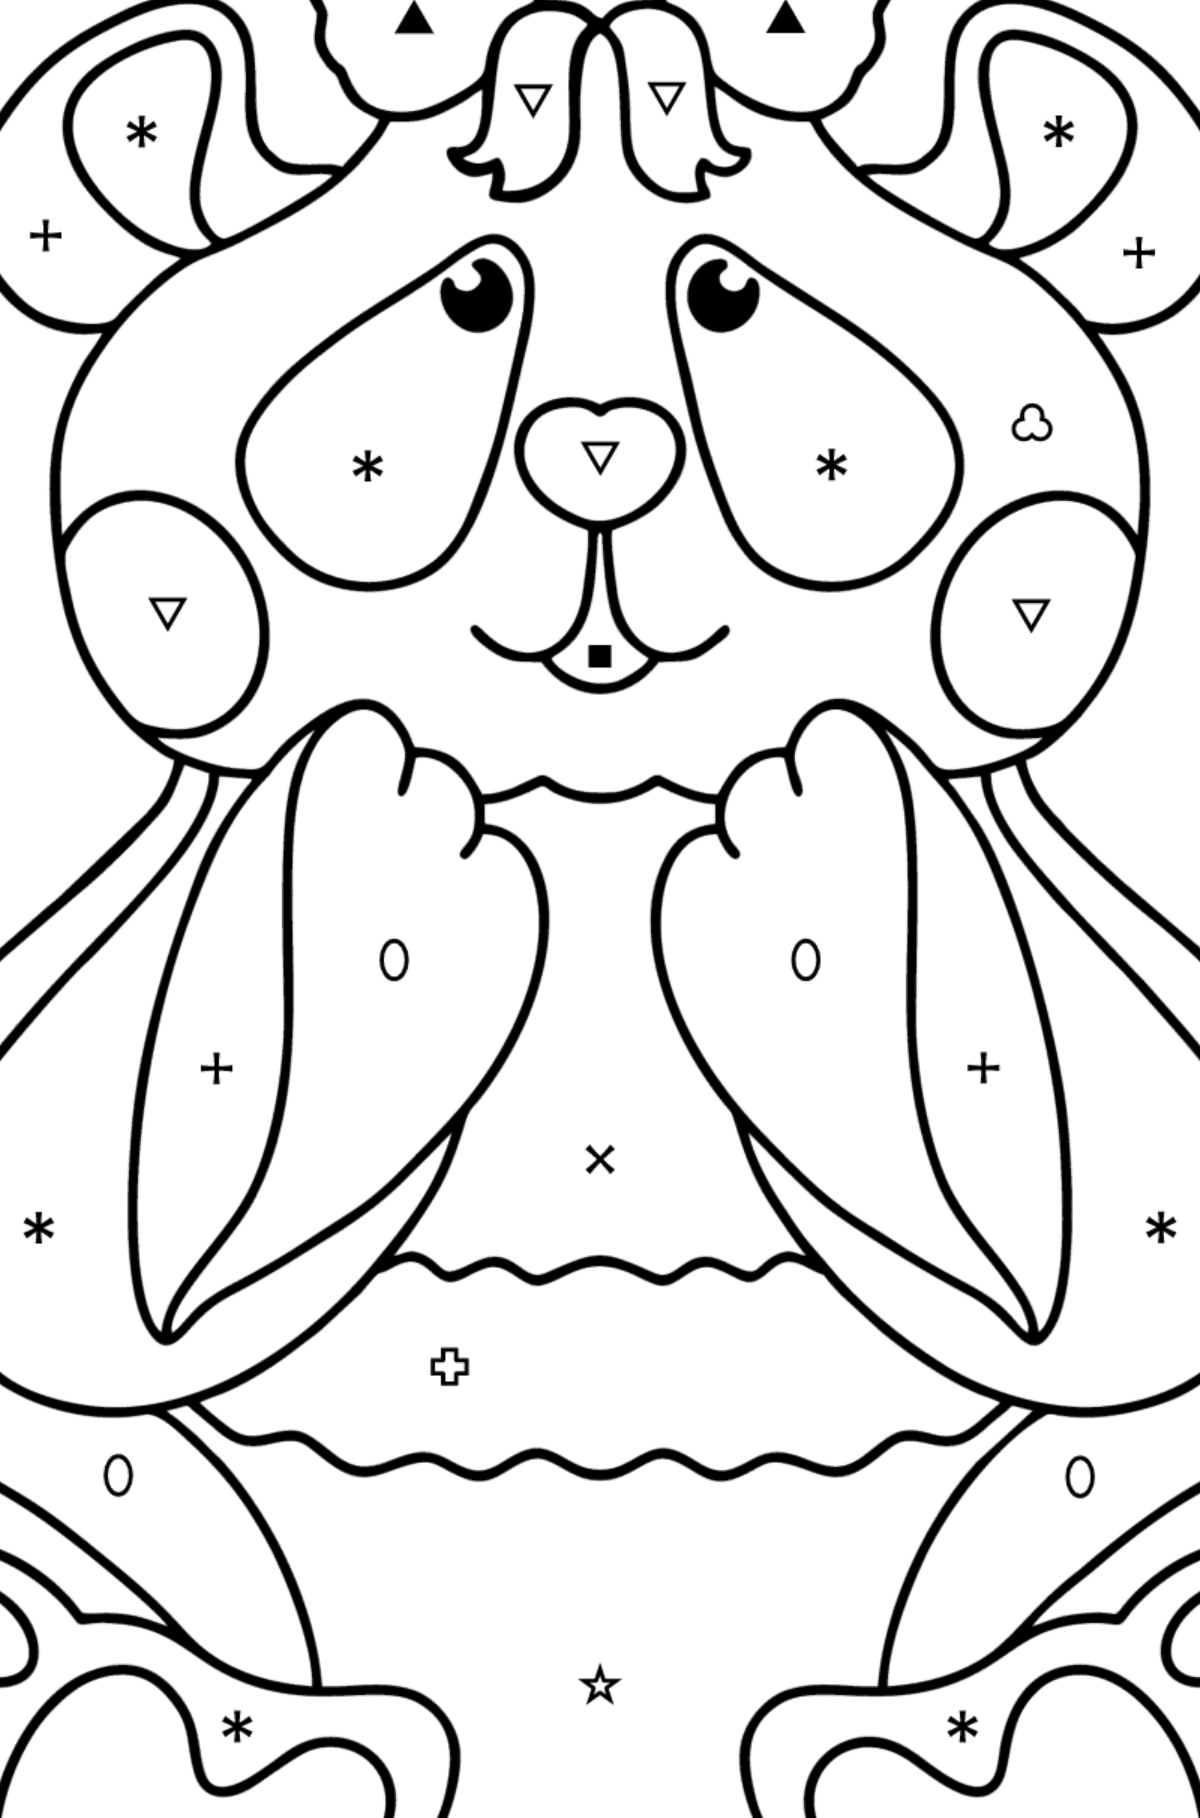 Kolorowanka panda kochanie - Kolorowanie według symboli i figur geometrycznych dla dzieci